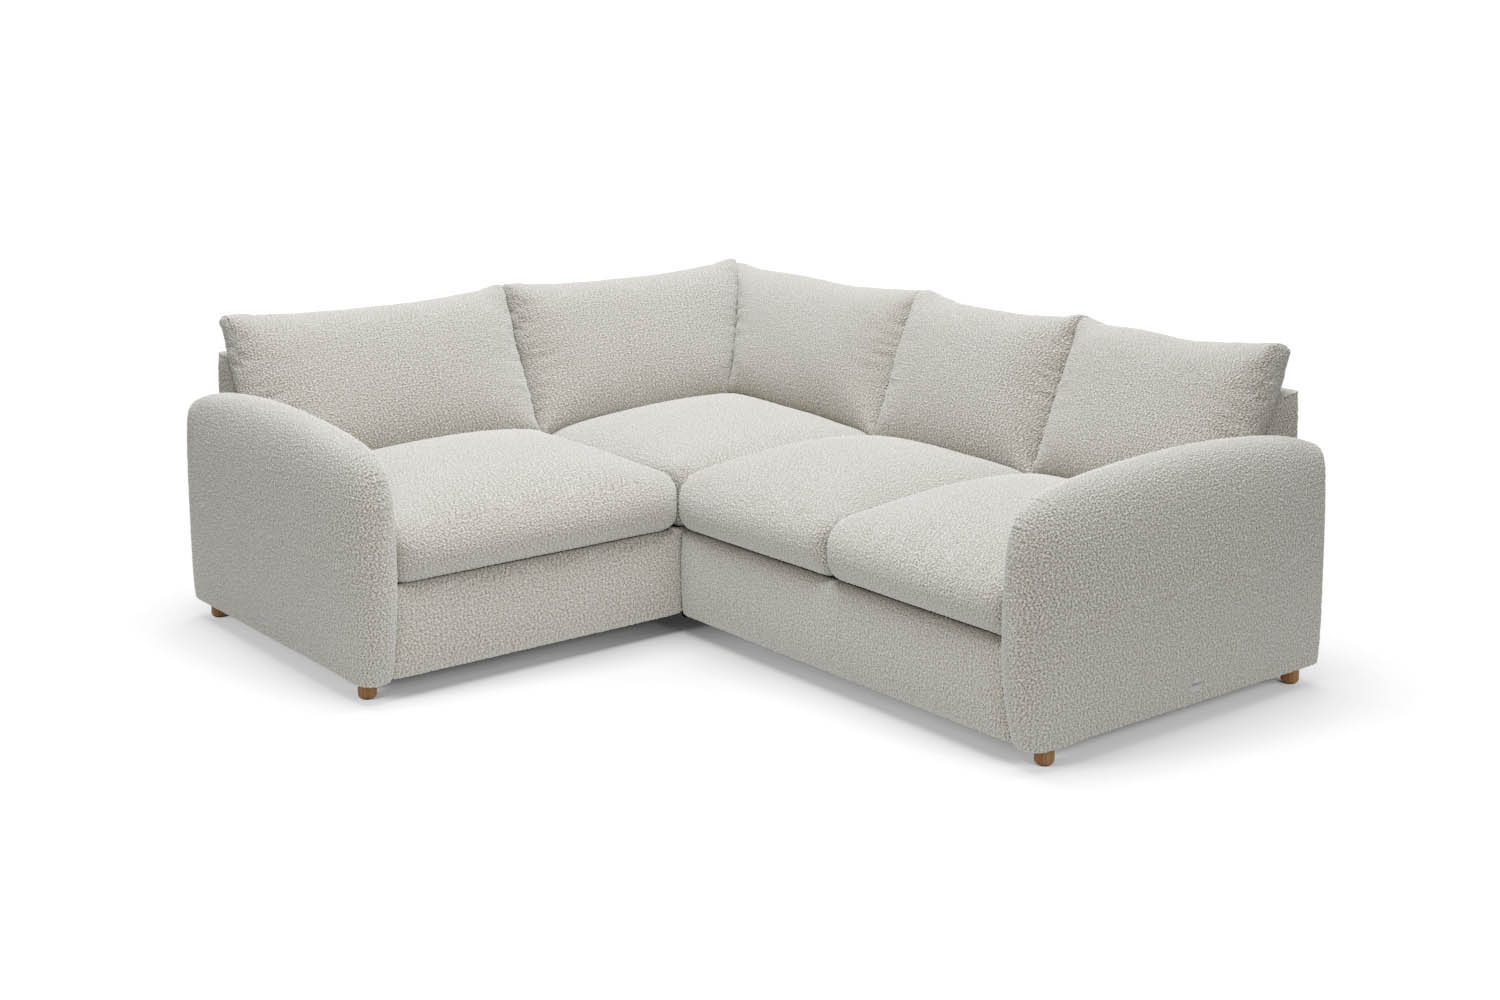 The Small Biggie - Small Corner Sofa - Fuzzy White Boucle